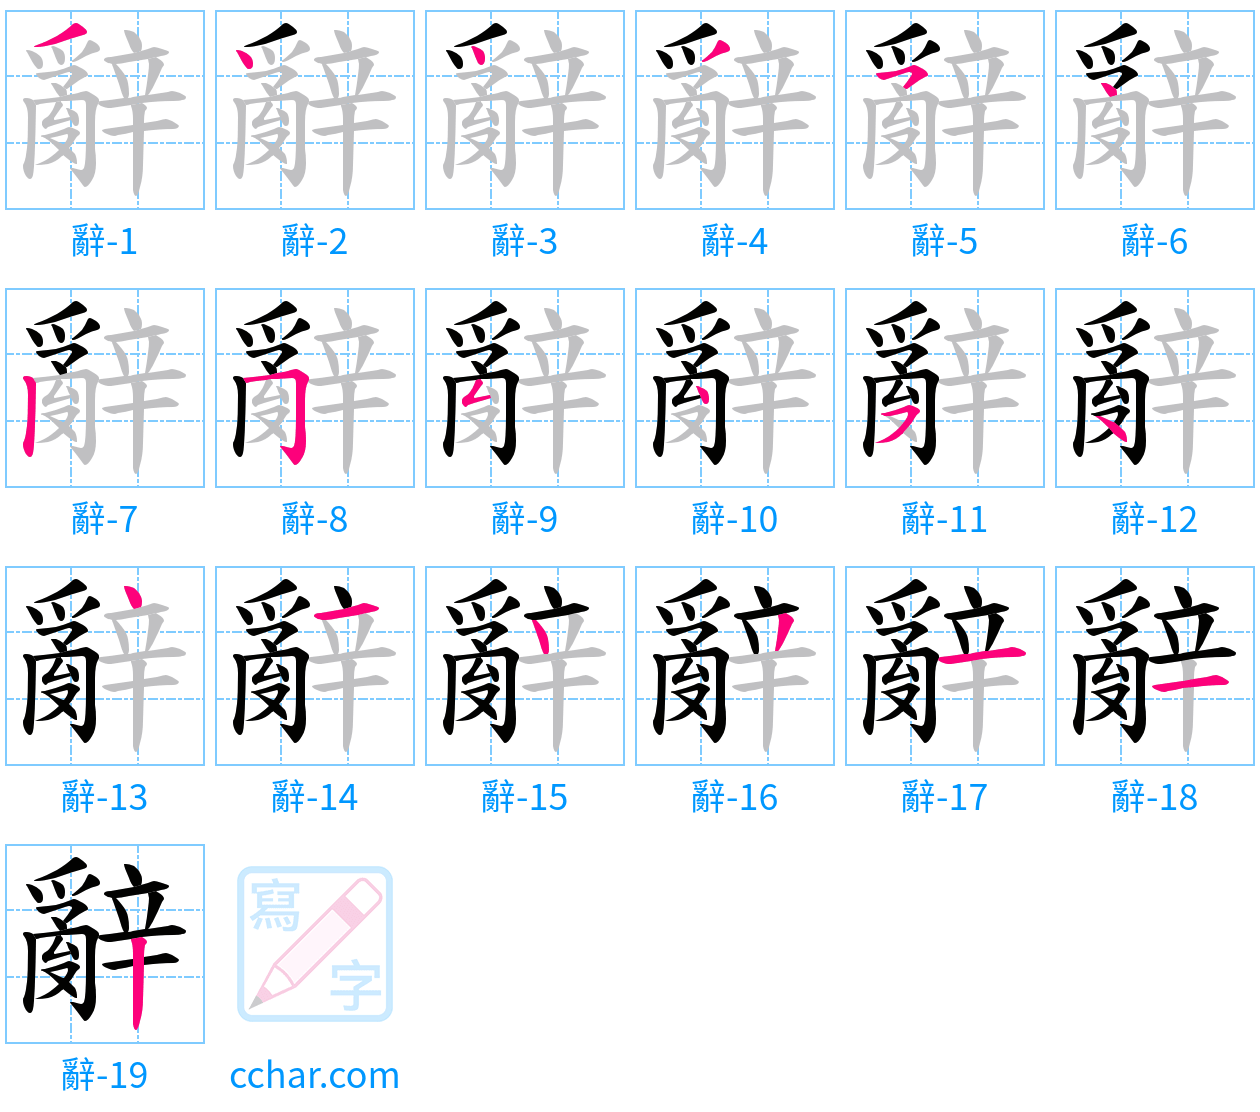 辭 stroke order step-by-step diagram